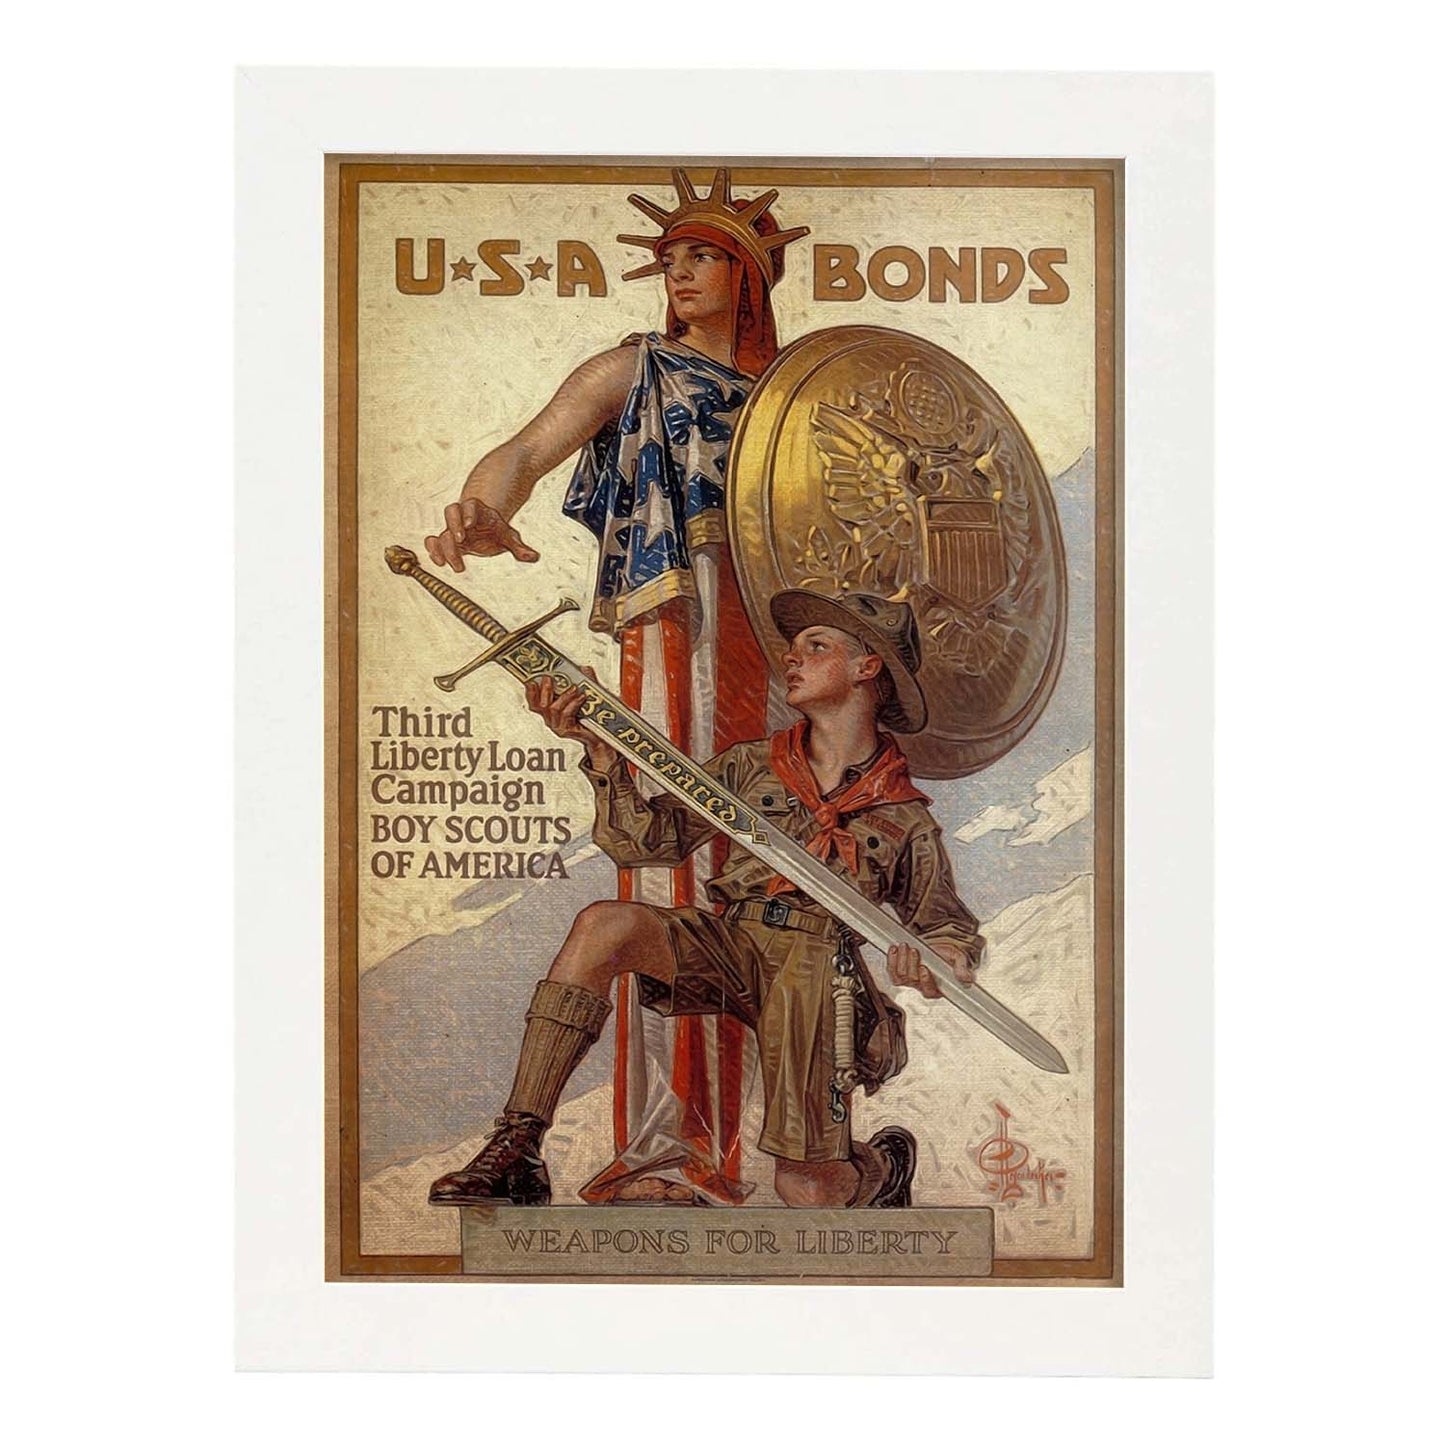 Poster vintage de Bonos de USA. con imágenes vintage y de publicidad antigua.-Artwork-Nacnic-A4-Marco Blanco-Nacnic Estudio SL